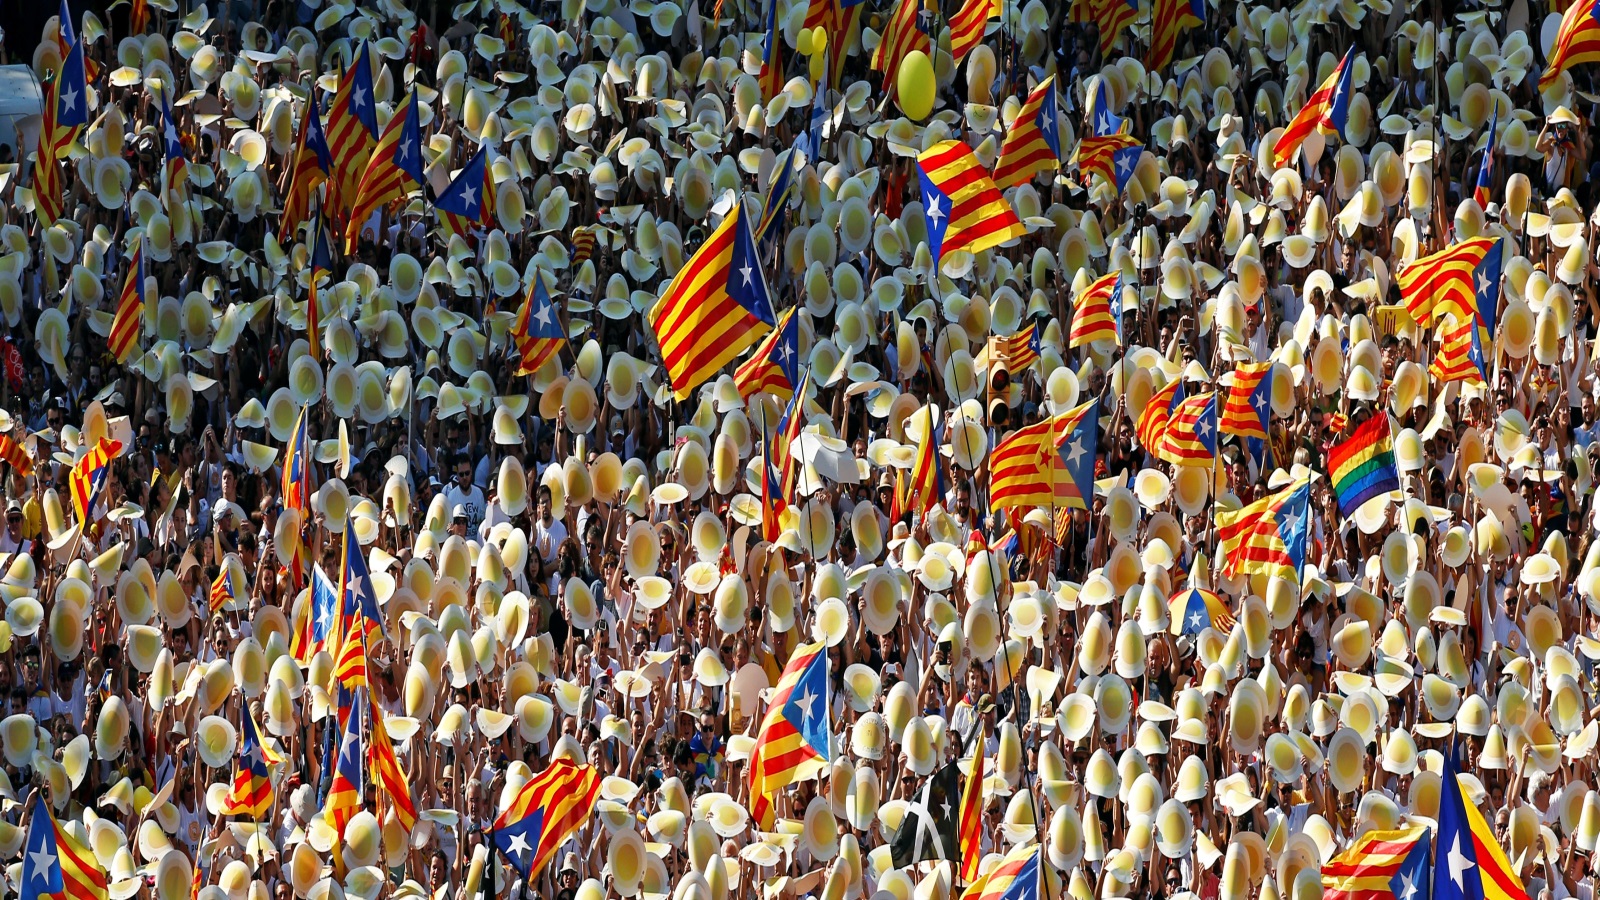 تُعَد أزمة كتالونيا إشارة قوية من التاريخ إلى أن أوروبا تحتاج إلى تطوير نوع جديد من السيادة، يعمل على تعزيز المدن والمناطق، وتذويب الذاتية الوطنية، ودعم المعايير الديمقراطية